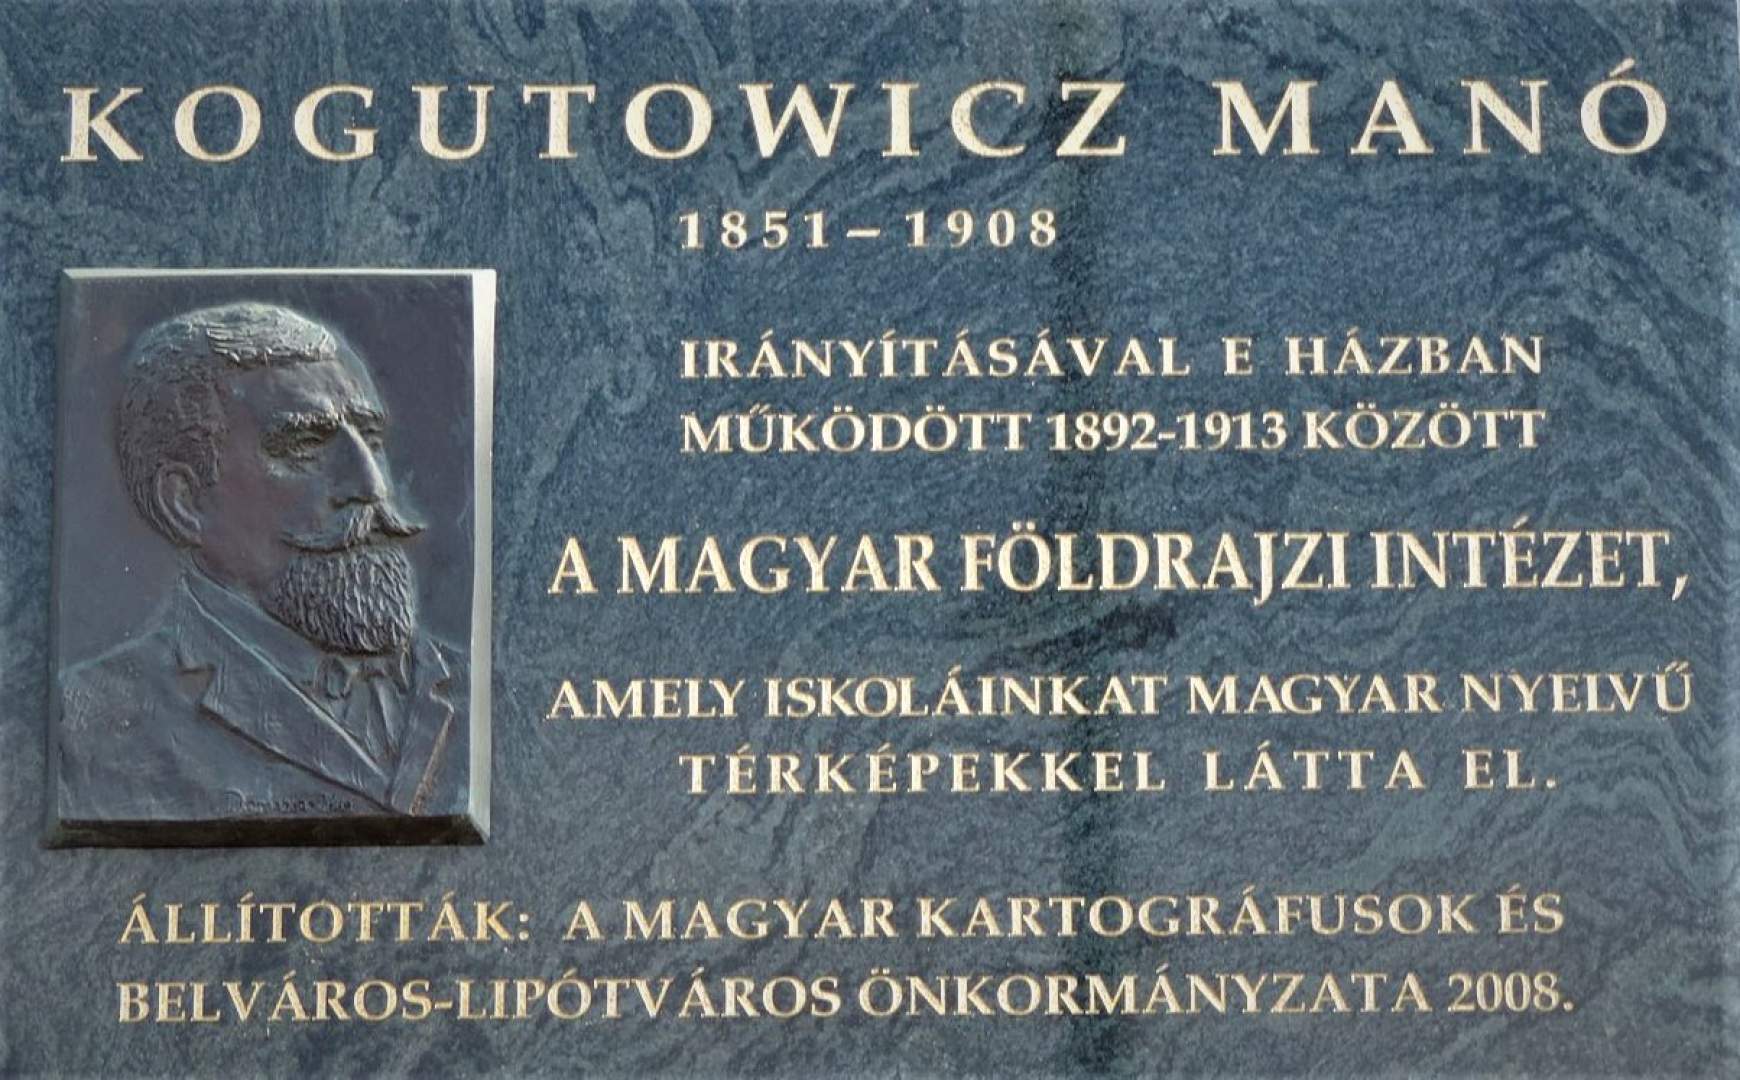 Kogutowicz Manó emléktáblája